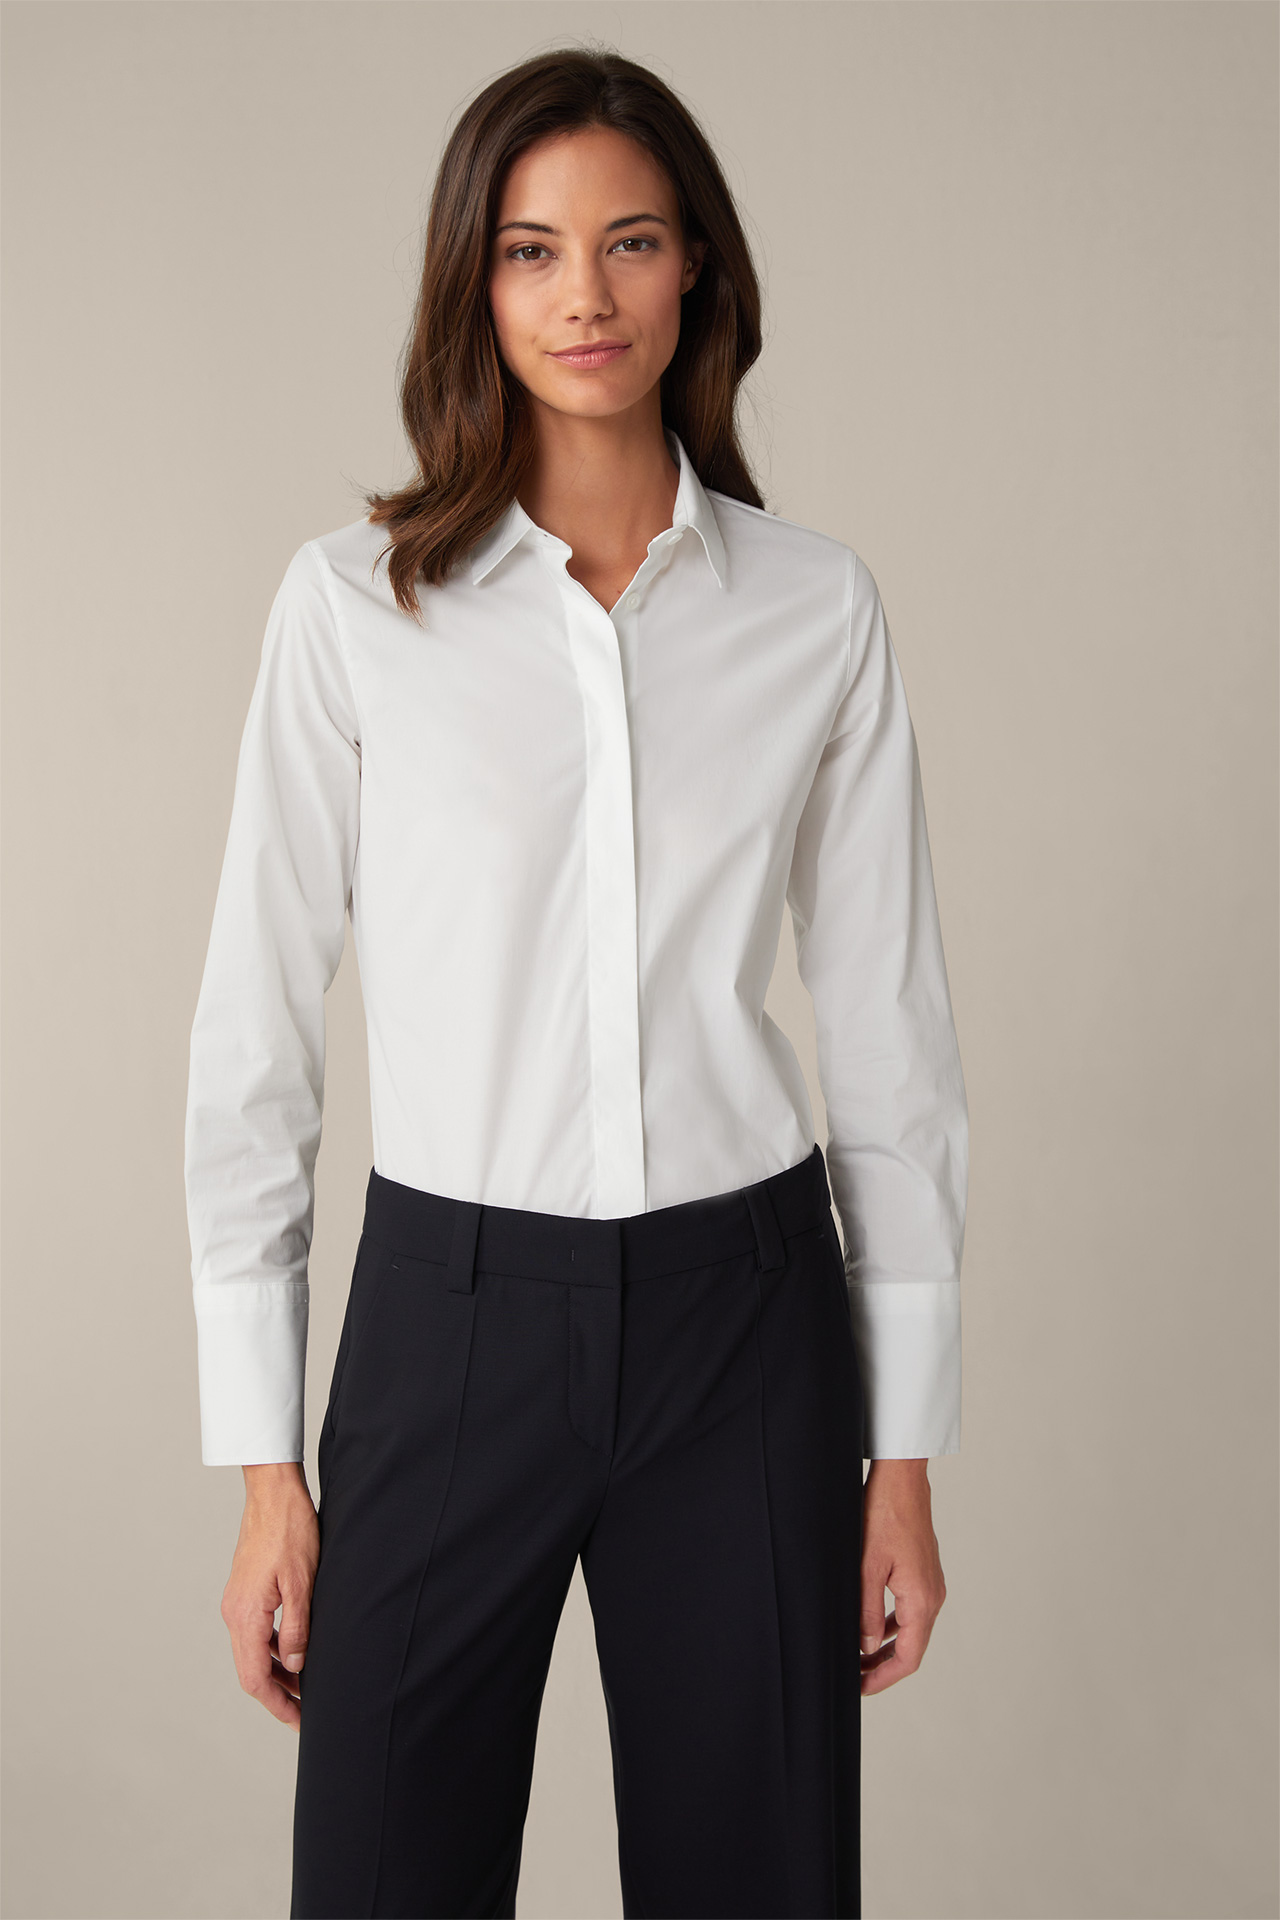 Baumwollstretch-Bluse mit Hemdkragen in Weiß